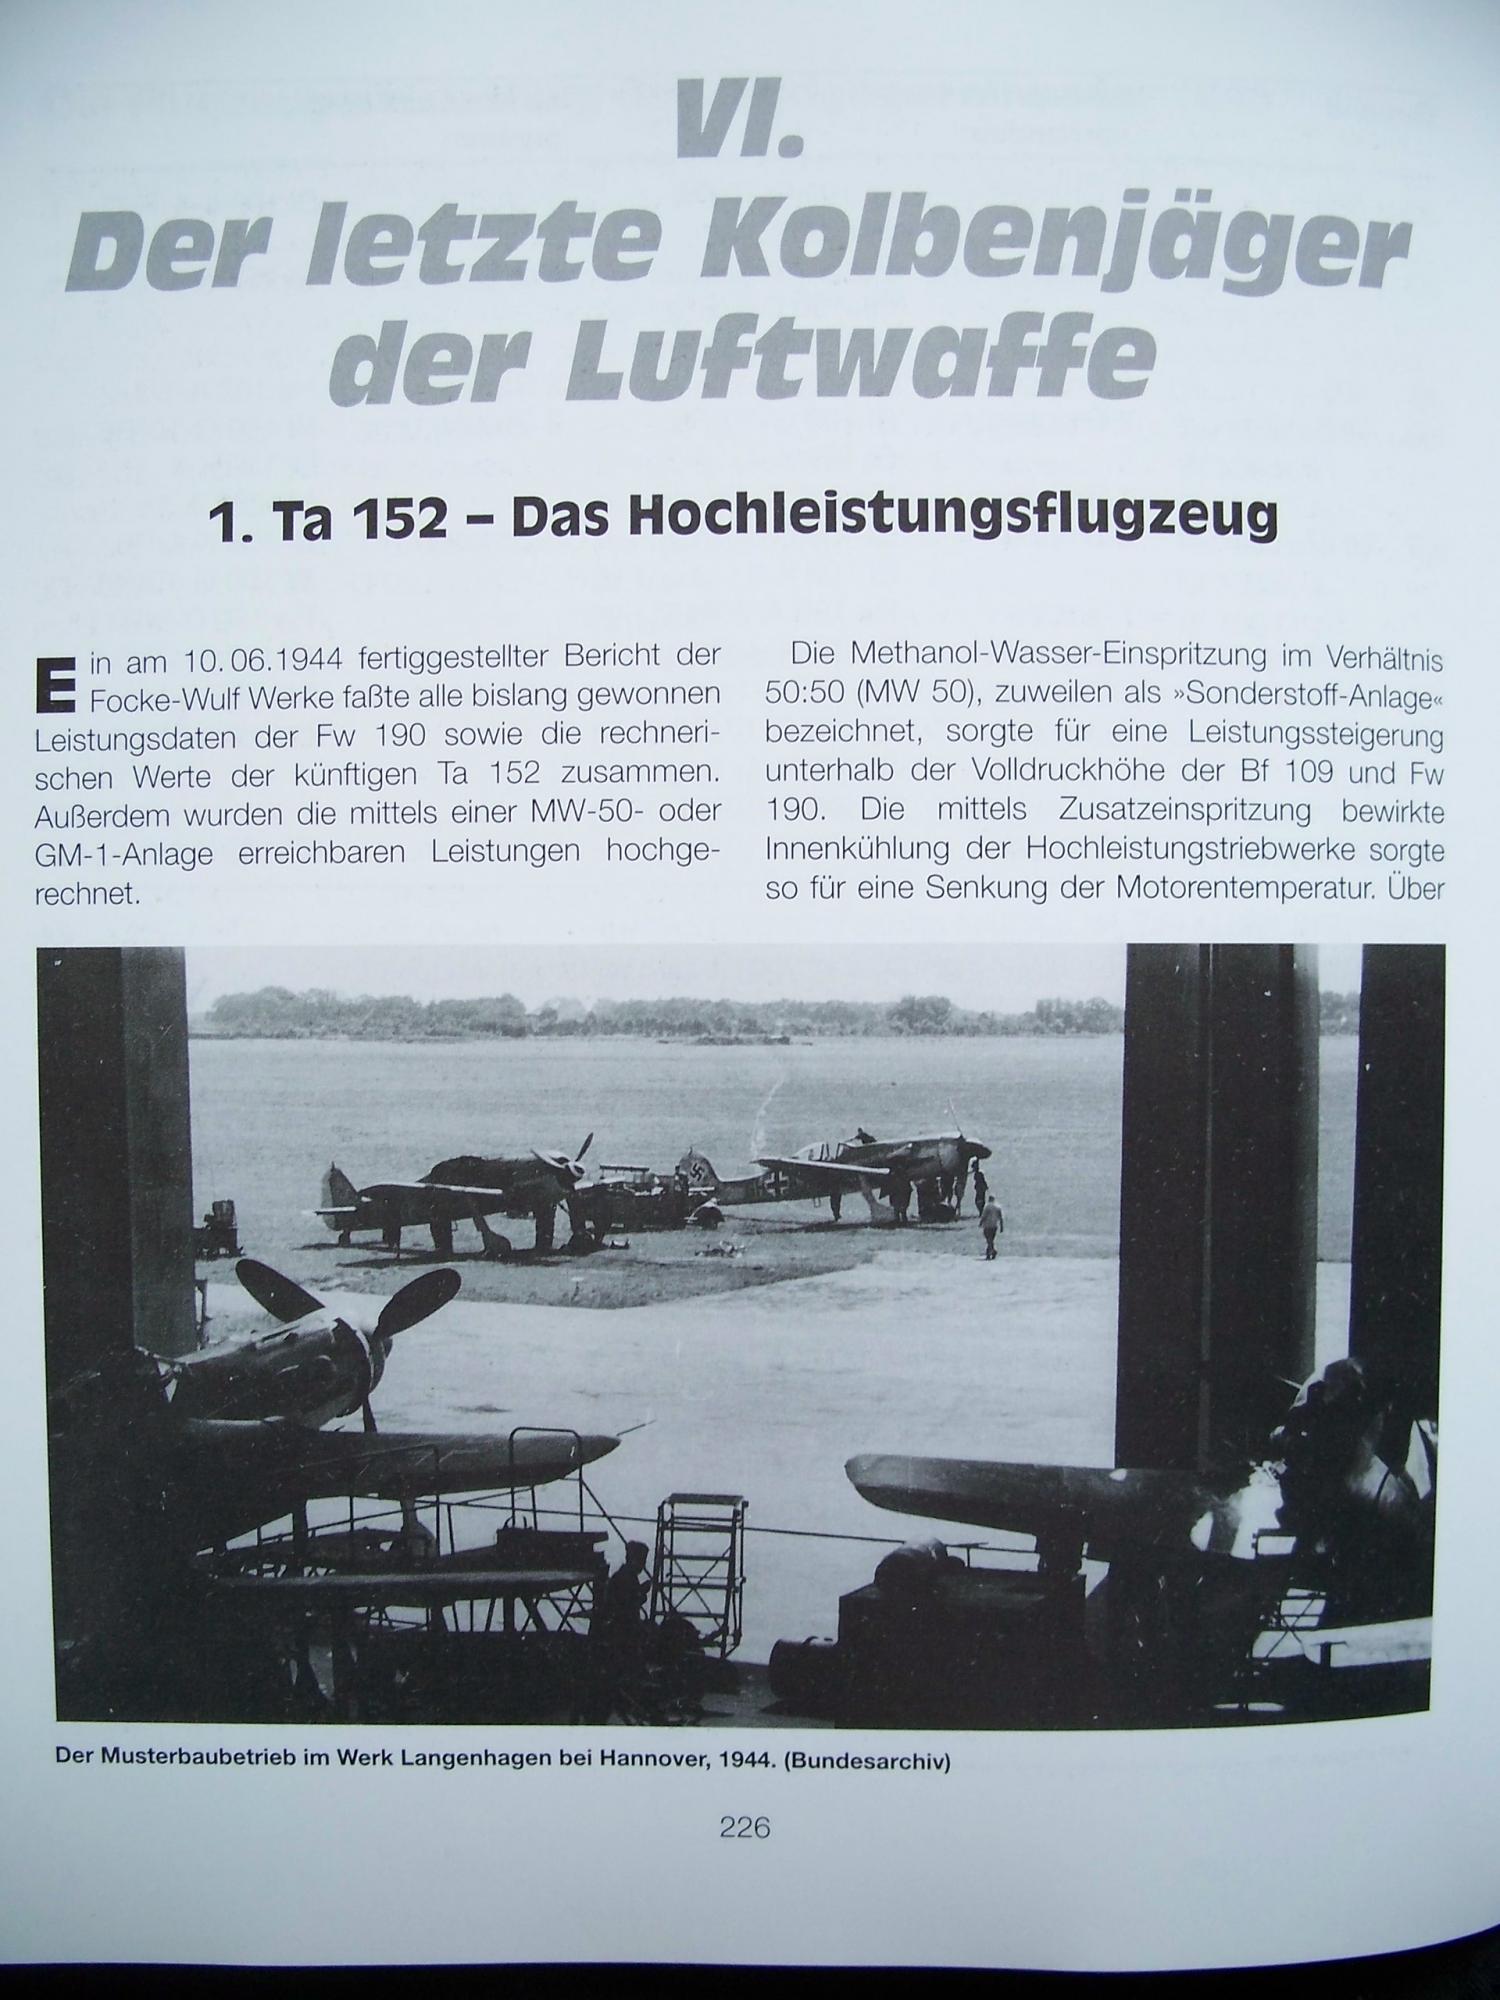 Focke Wulf FW 190/Ta 152 - Jäger, Jagdbomber, Panzerjäger Скачать